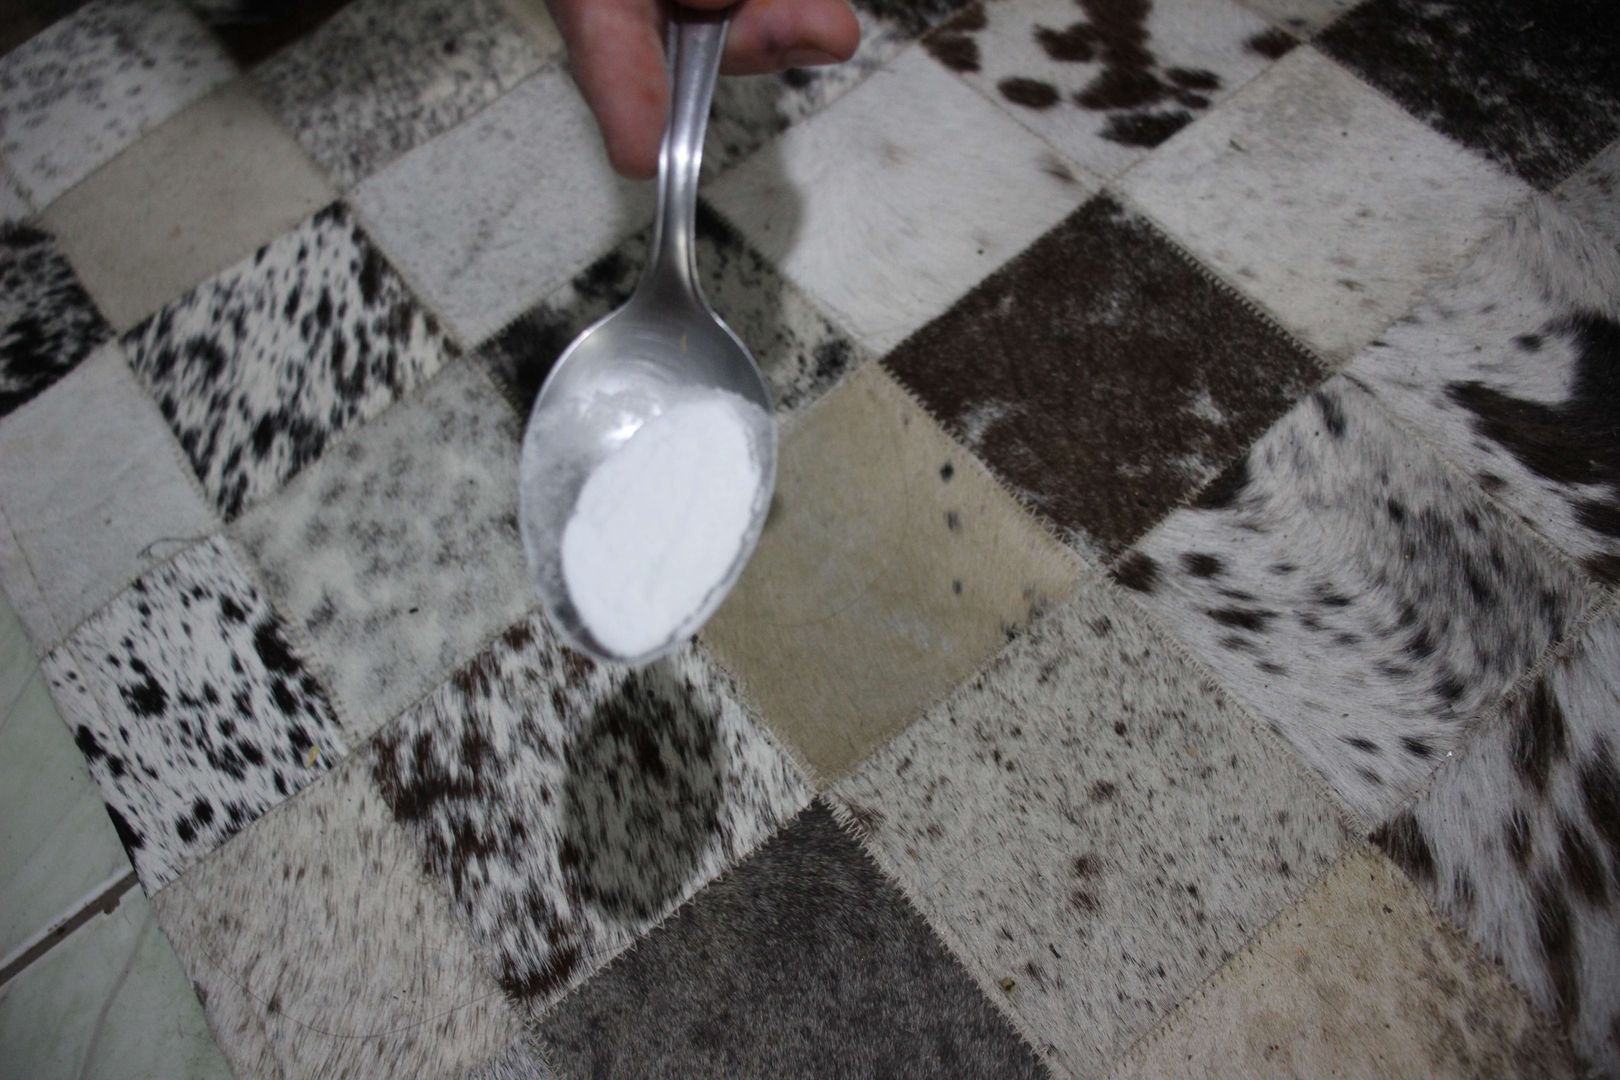 produto para limpar carpetes a seco: 5 passos simples